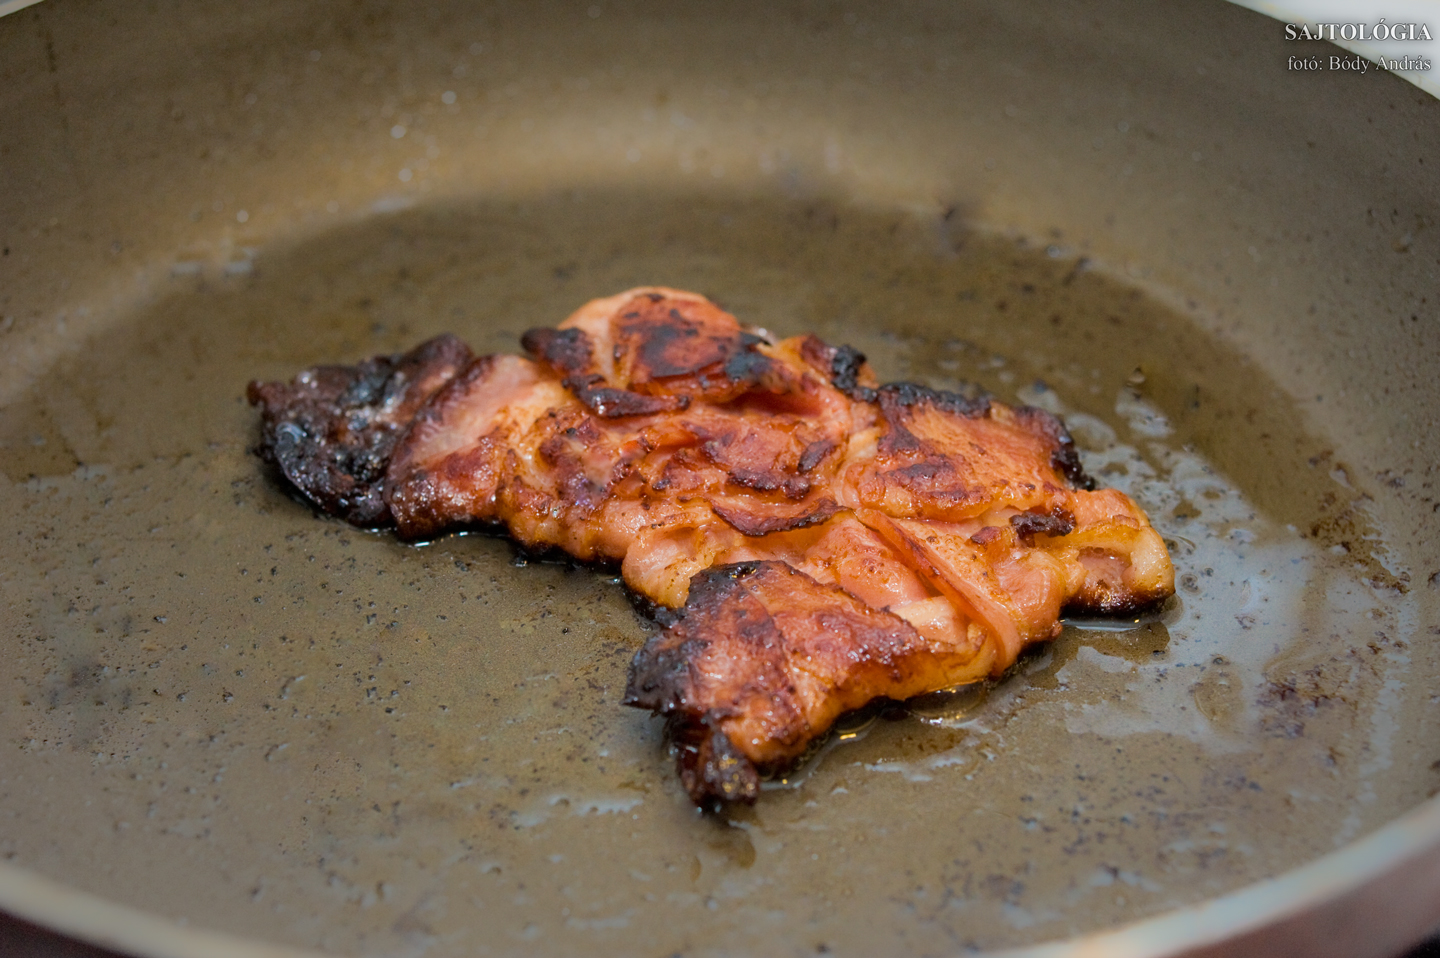 A bacont lassú tűzön, esetleg egy kis zsír hozzáadásával süssük, hogy alaposan átsüljön. A tepertőzsírt mindjárt hasznosítjuk -